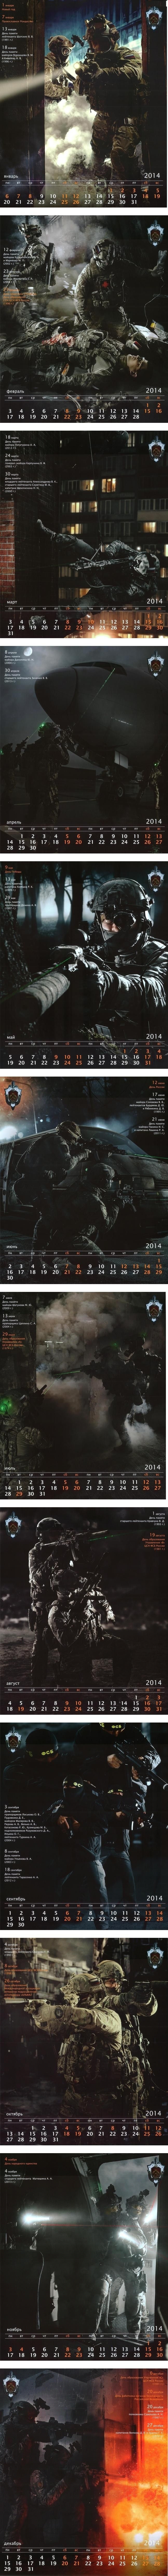 Календарь на 2014 от Спецподразделение "Альфа" 